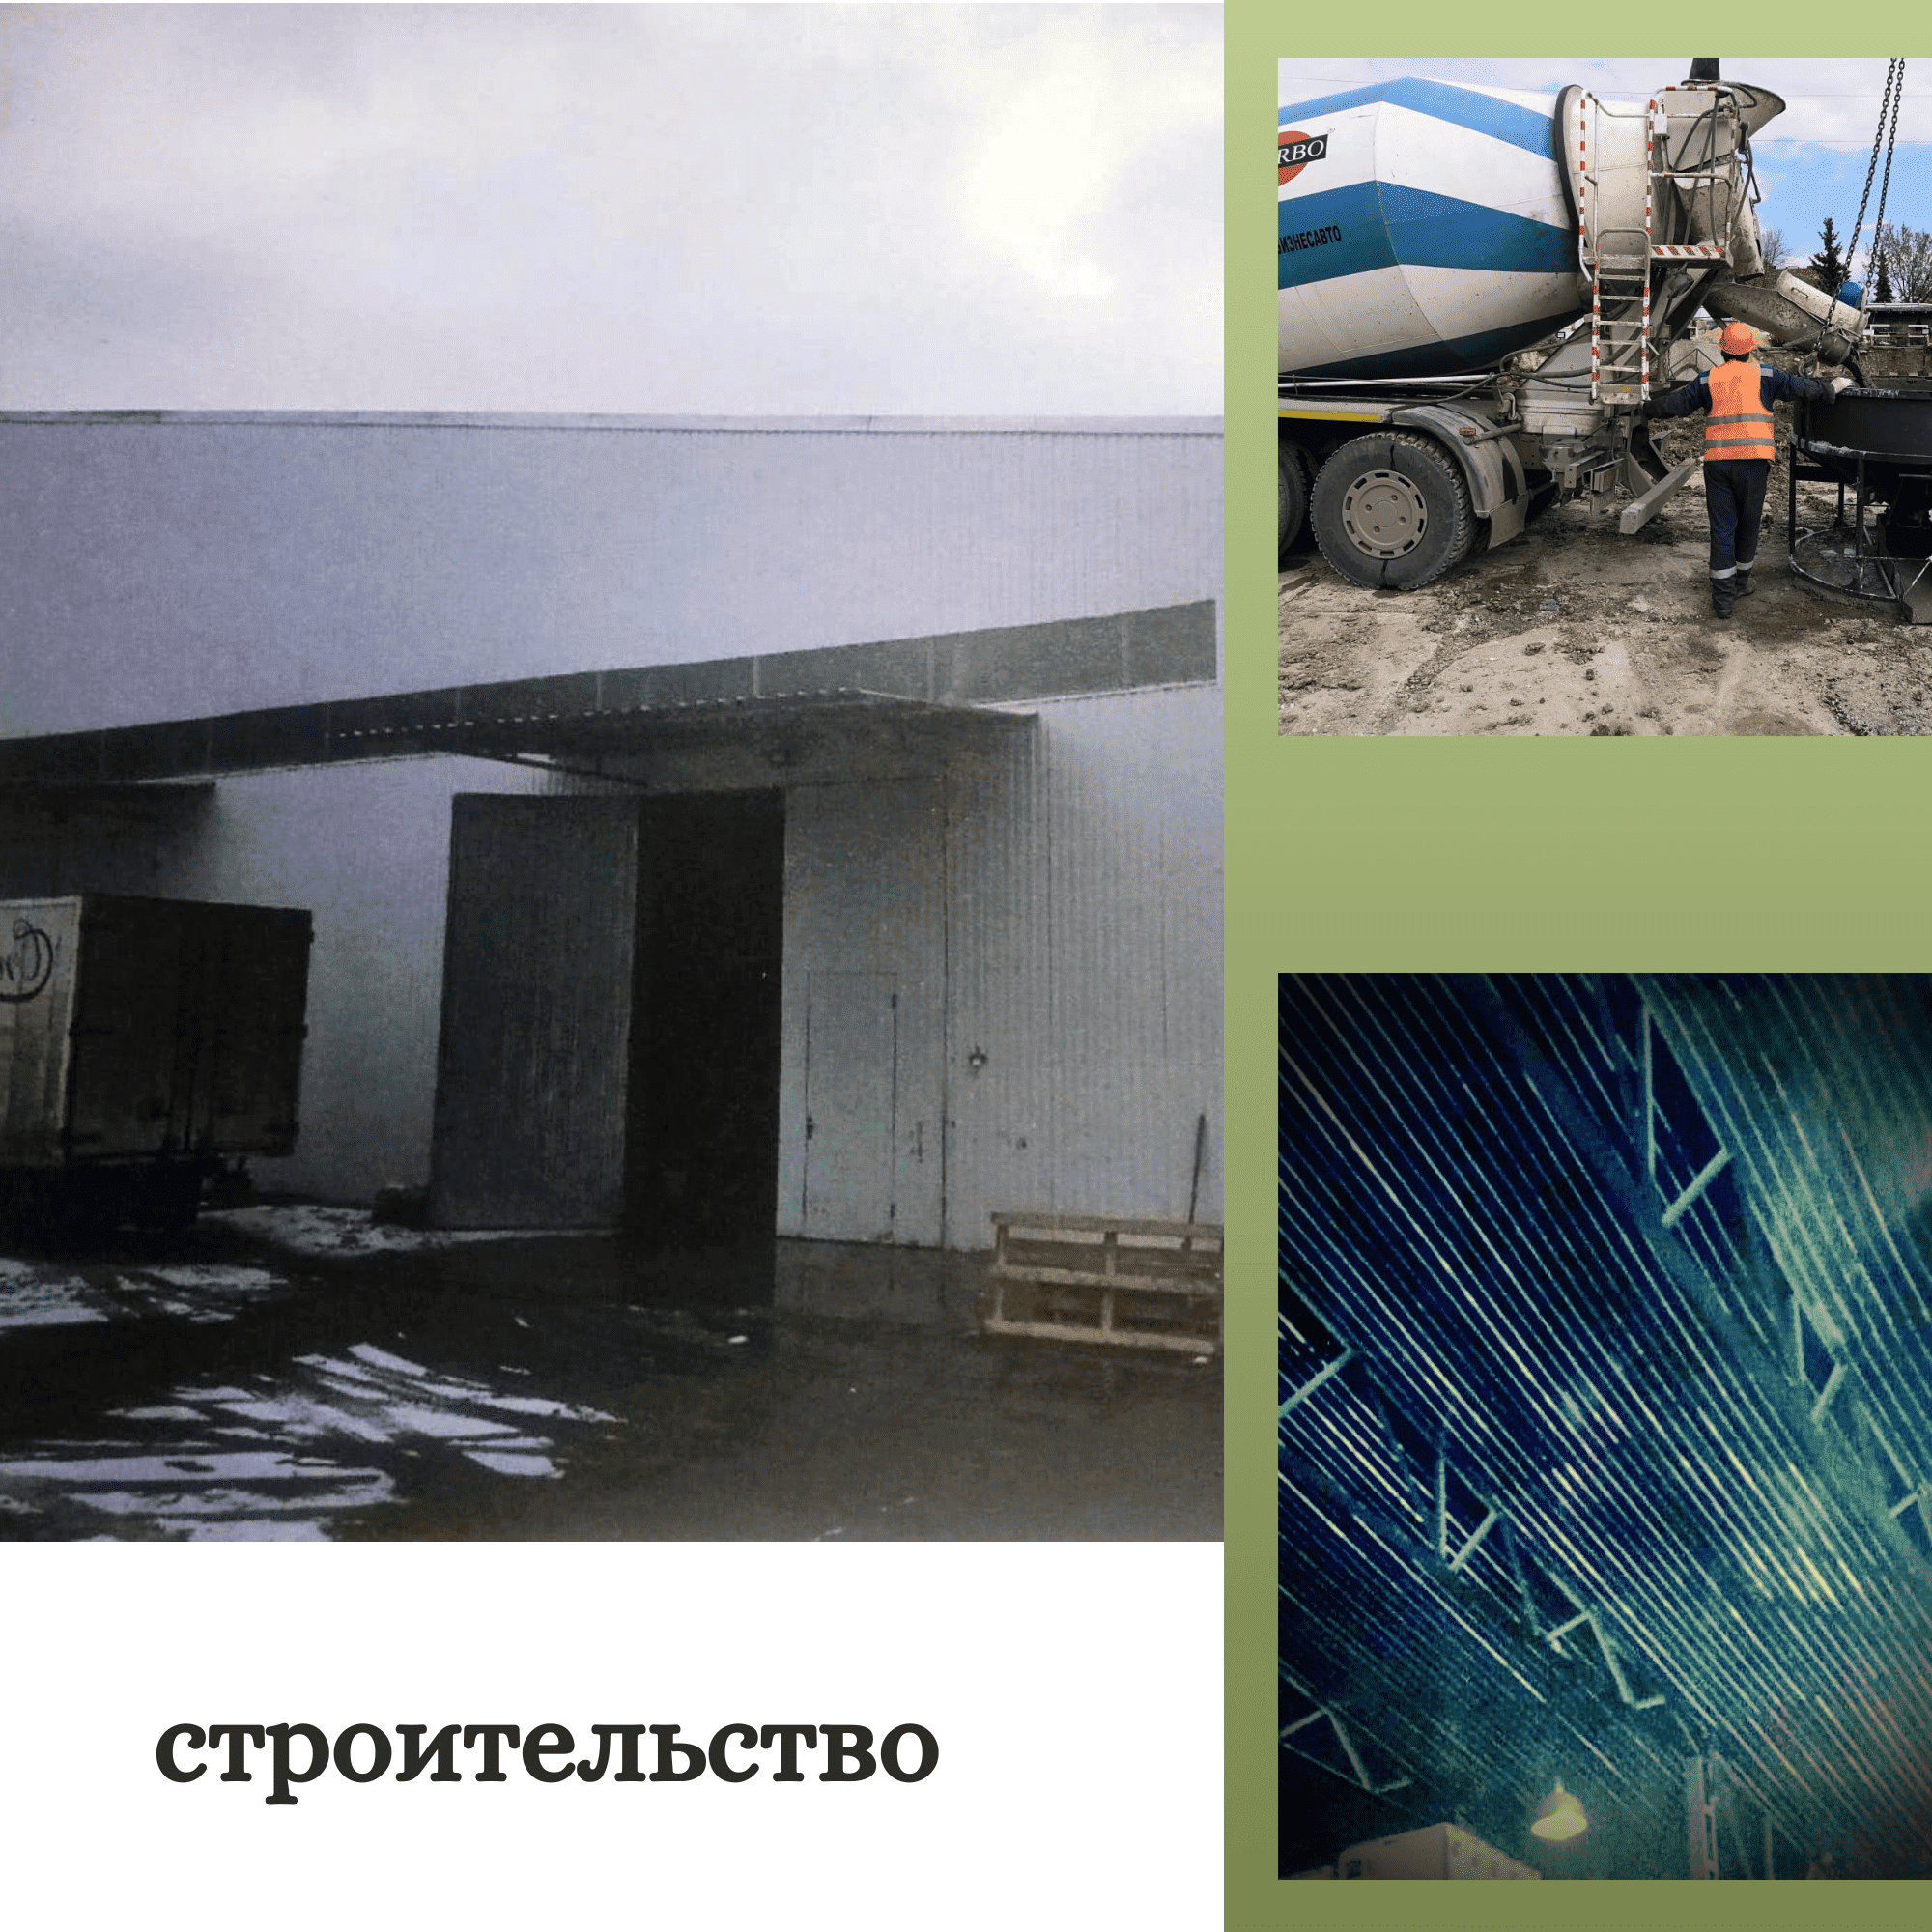 Cтроительство складов и ангаров в Москве, Московской области из металлоконструкций и сэндвич-панелей под ключ